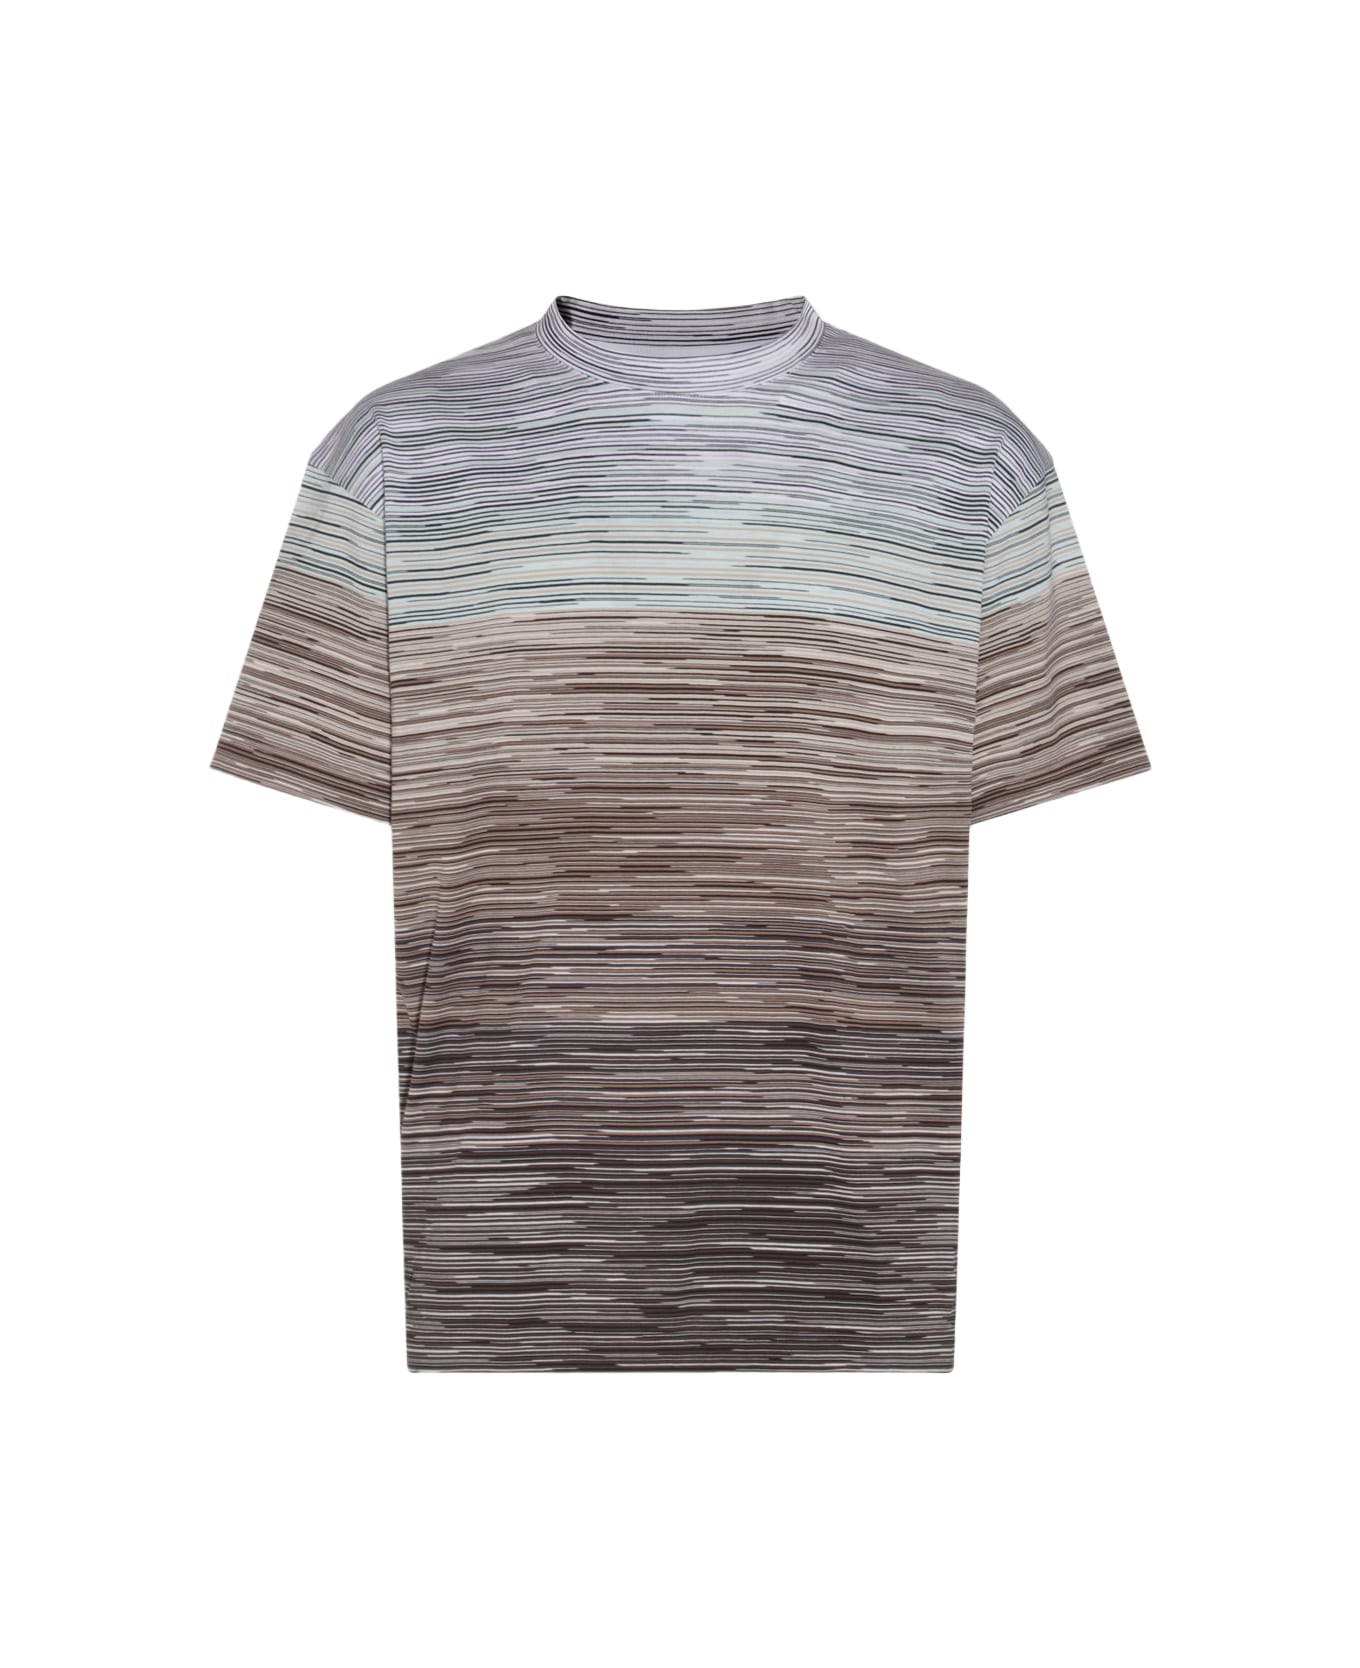 Missoni Multicolor Cotton T-shirt - Beige